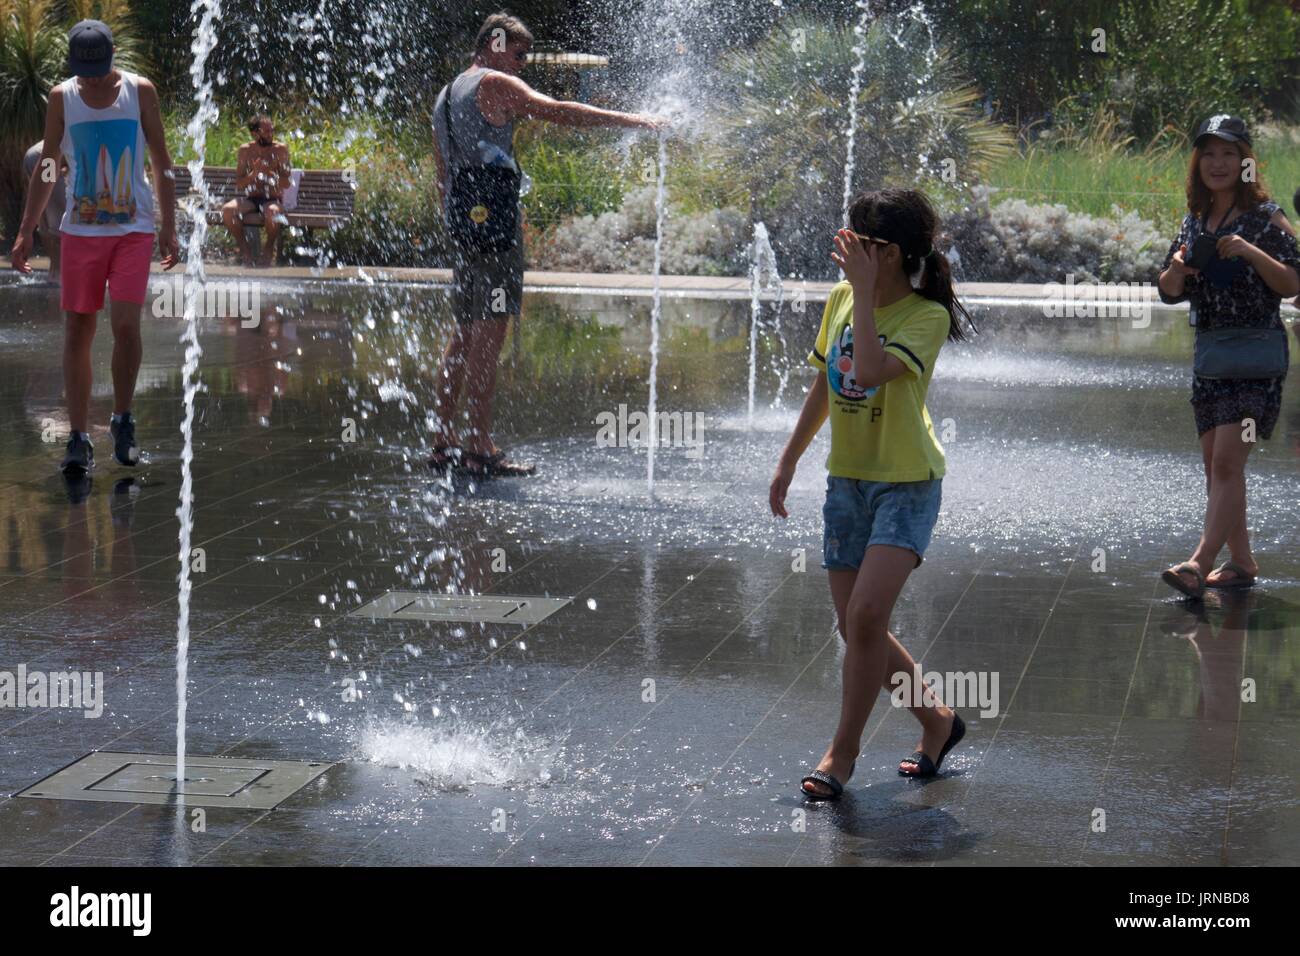 Touristen, die Spaß haben, in Wasserfontänen am Massena-Platz, Nizza, Frankreich zu planschen Stockfoto